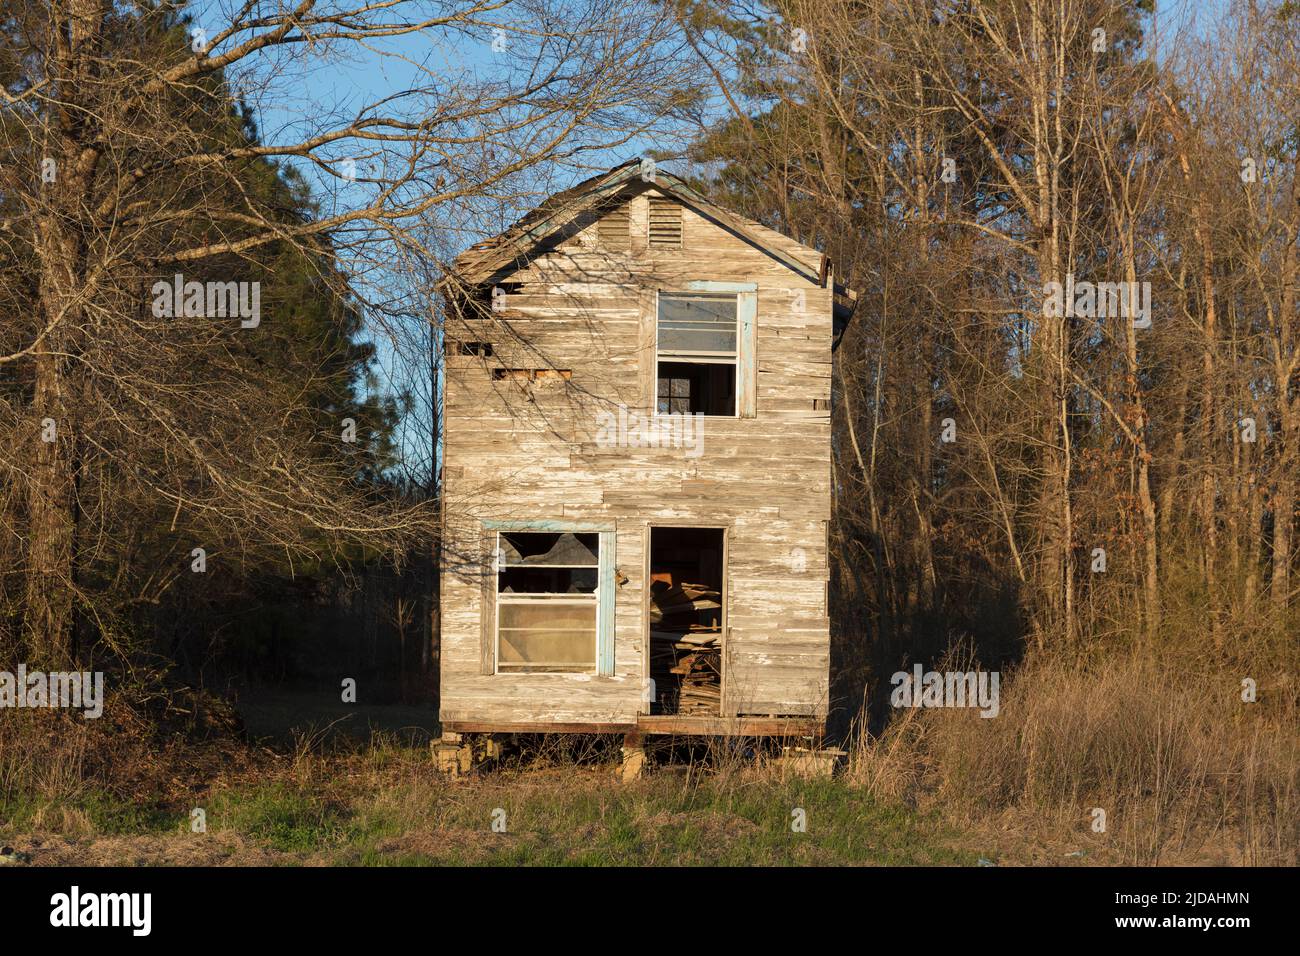 Une ferme rurale ou une petite maison abandonnée et en ruine, surcultivée avec des plantes et des arbustes. Banque D'Images